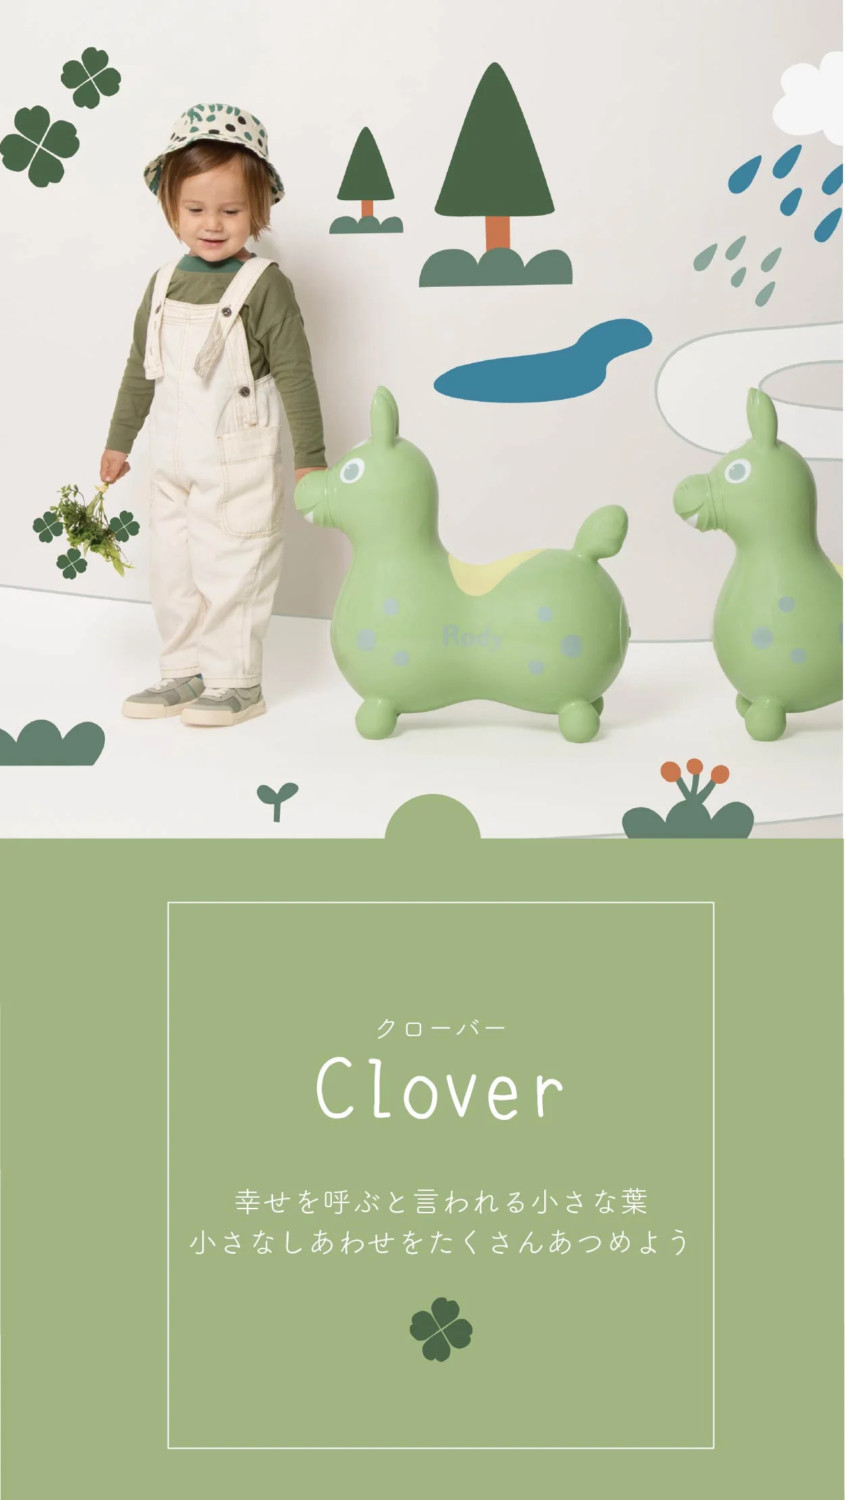 clover(クローバー)